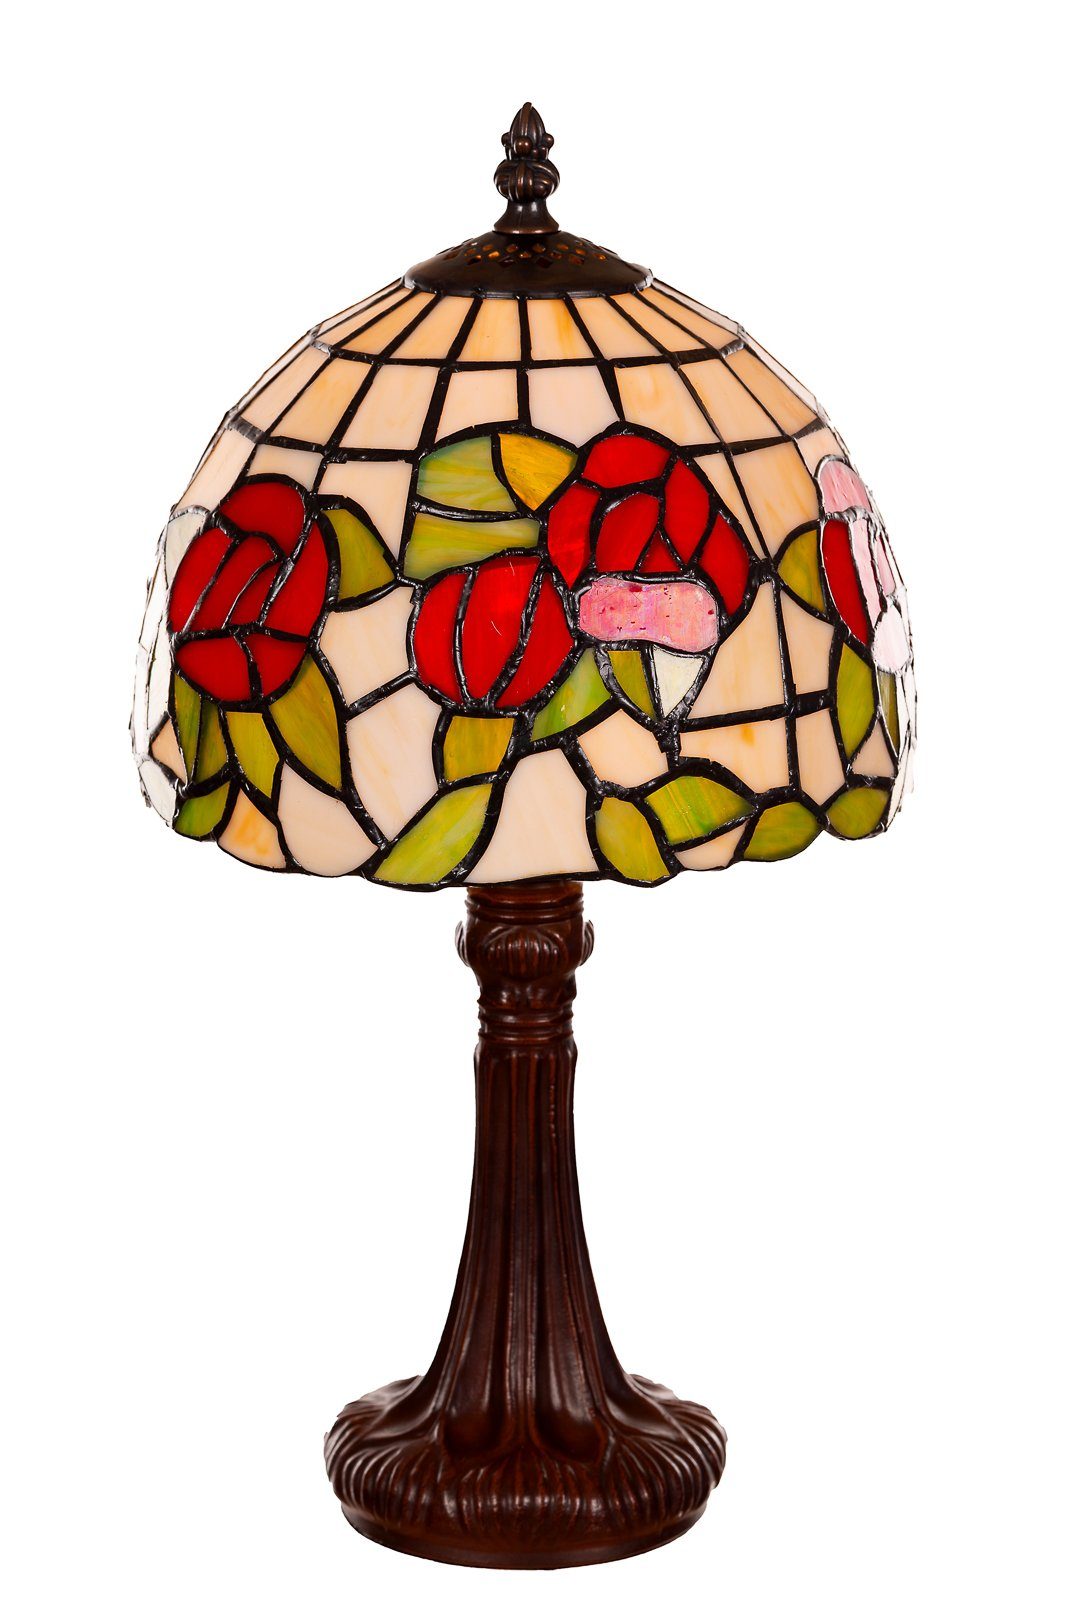 Tiff149 BIRENDY Lampe Style Motiv Tischlampe Tiffany Rosen Stehlampe Birendy